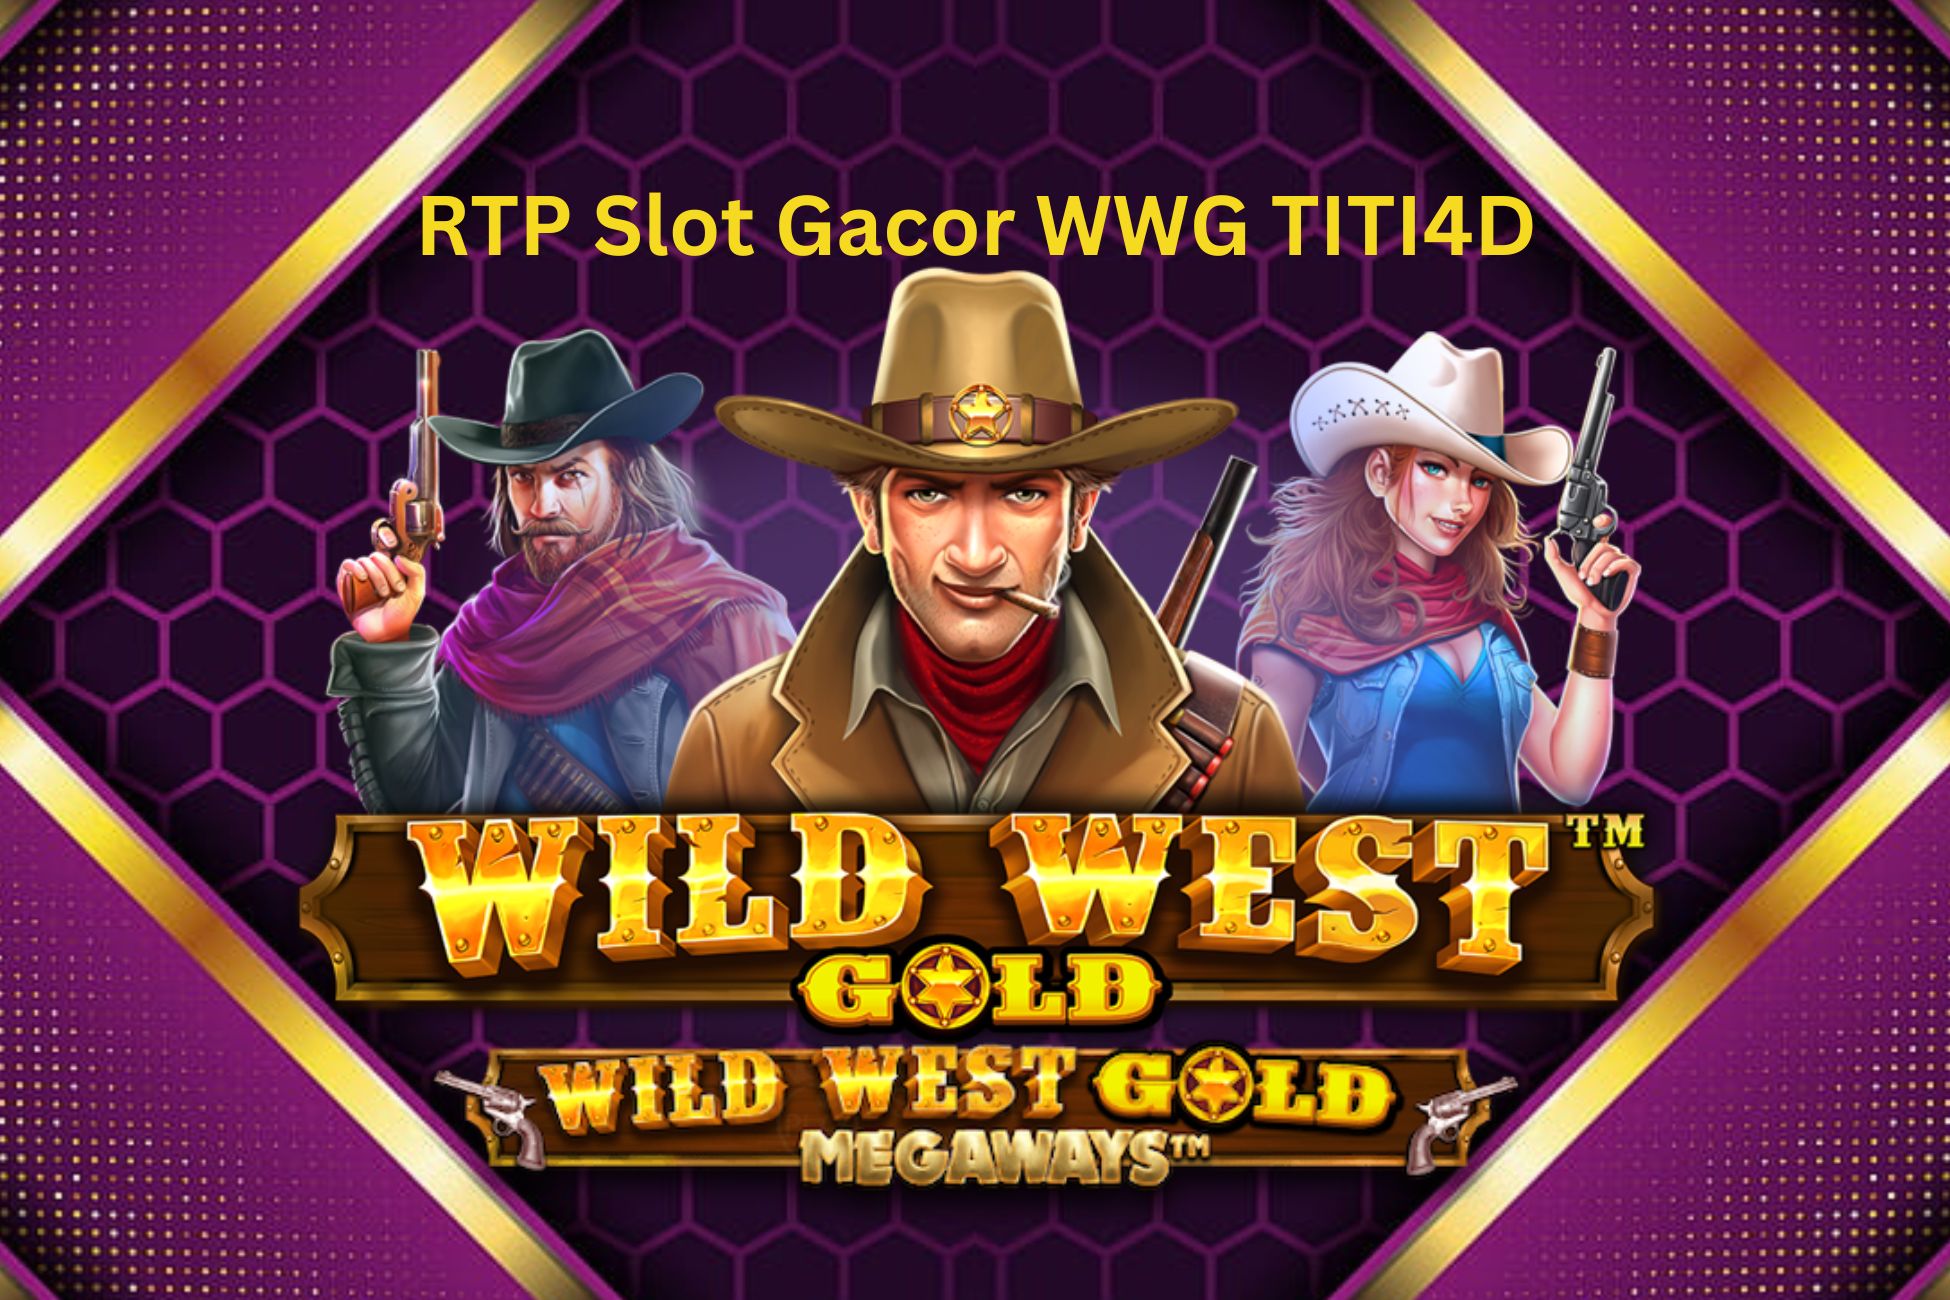 RTP Slot Gacor WWG TITI4D